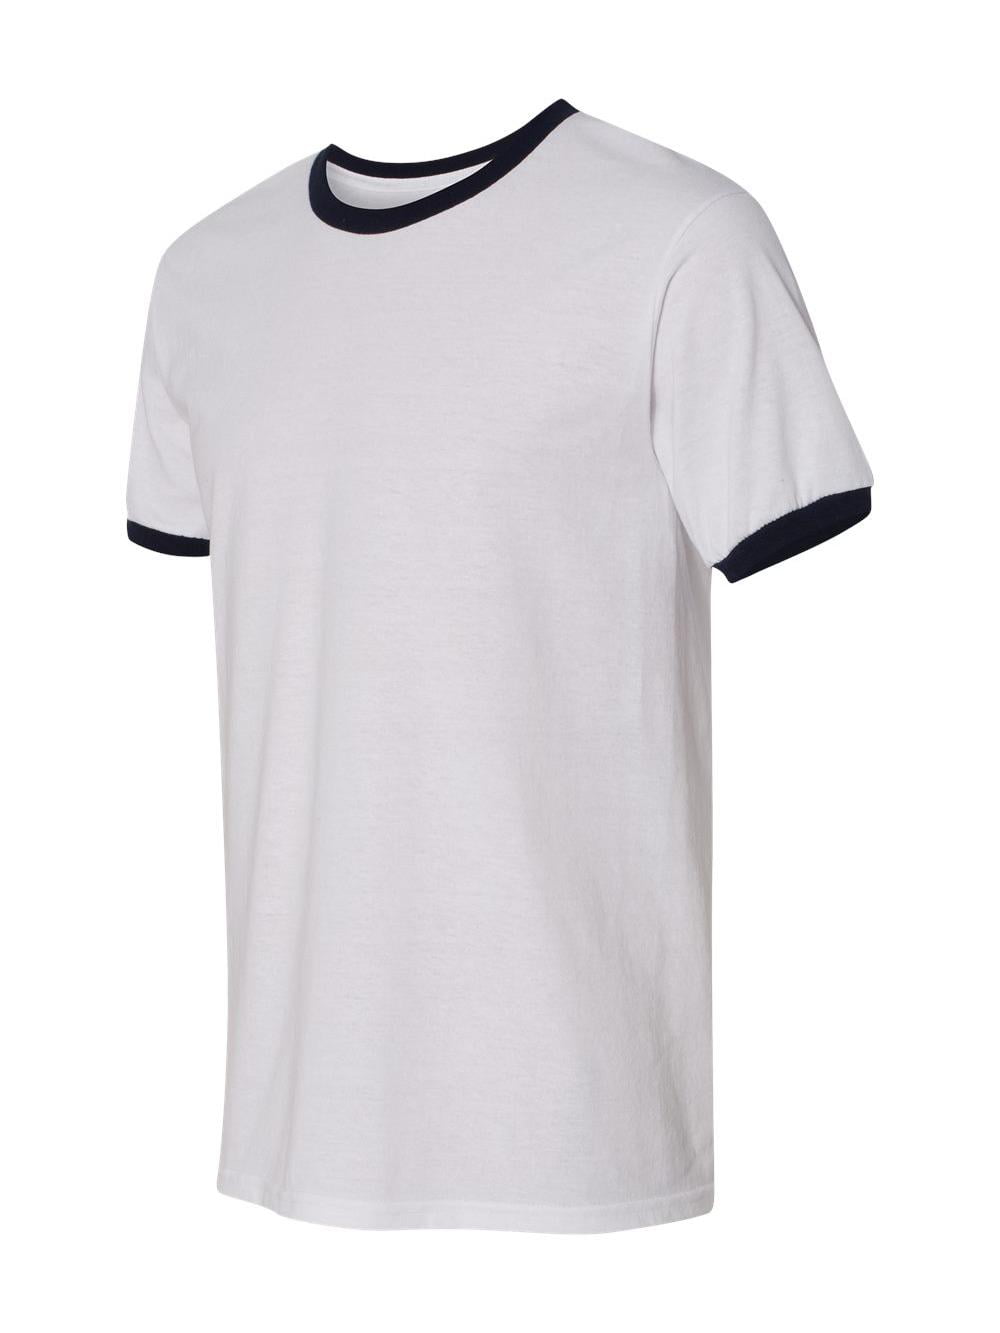 Gildan - DryBlend Ringer T-Shirt - 8600 - Walmart.com